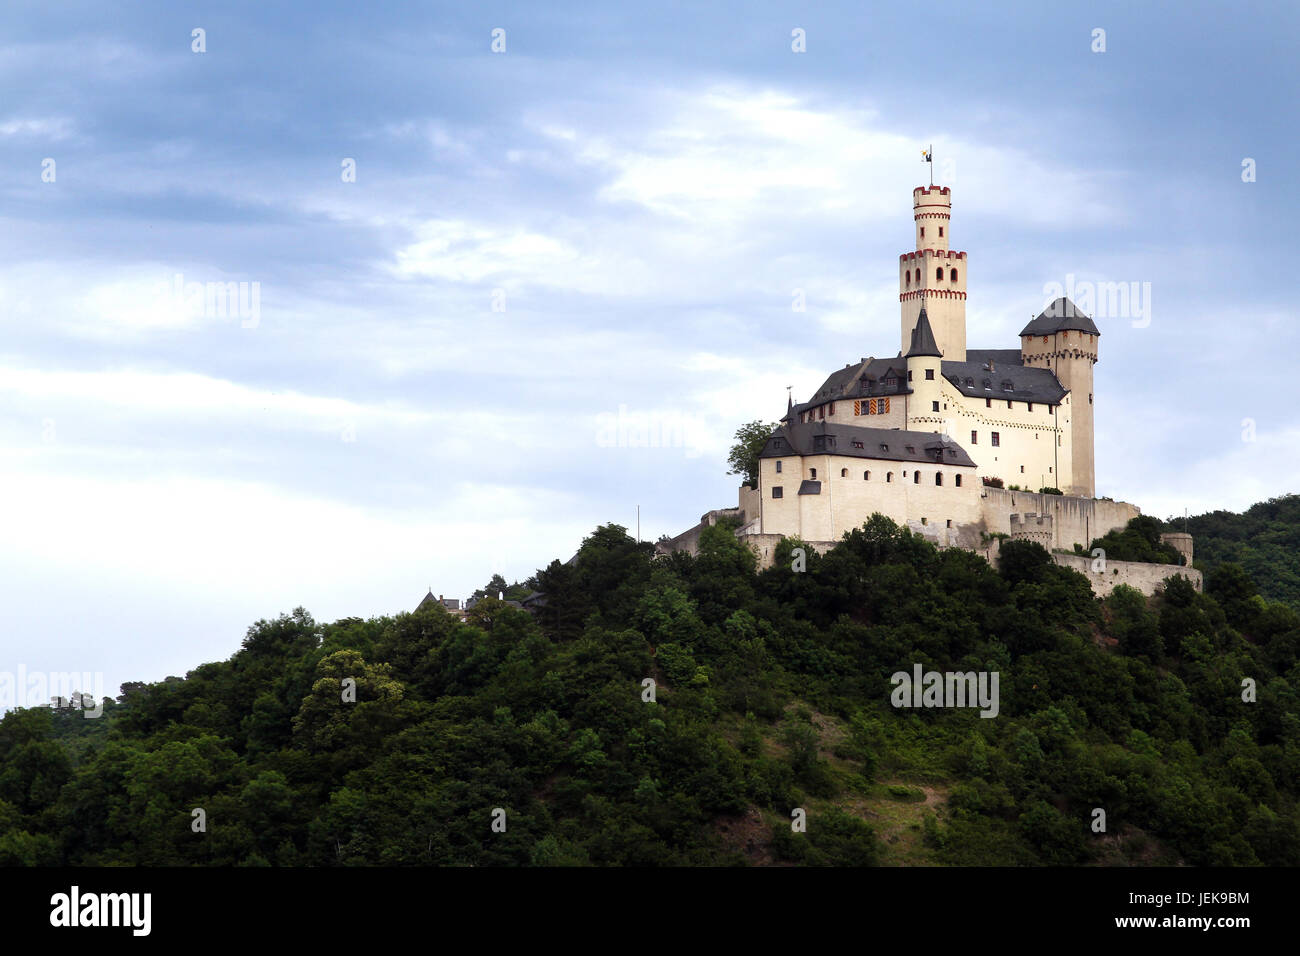 La Marksburg est un château au-dessus de la ville de Lahnstein en Rhénanie-Palatinat, Allemagne. Elle est un des principaux sites des gorges du Rhin le monde de l'UNESCO Banque D'Images